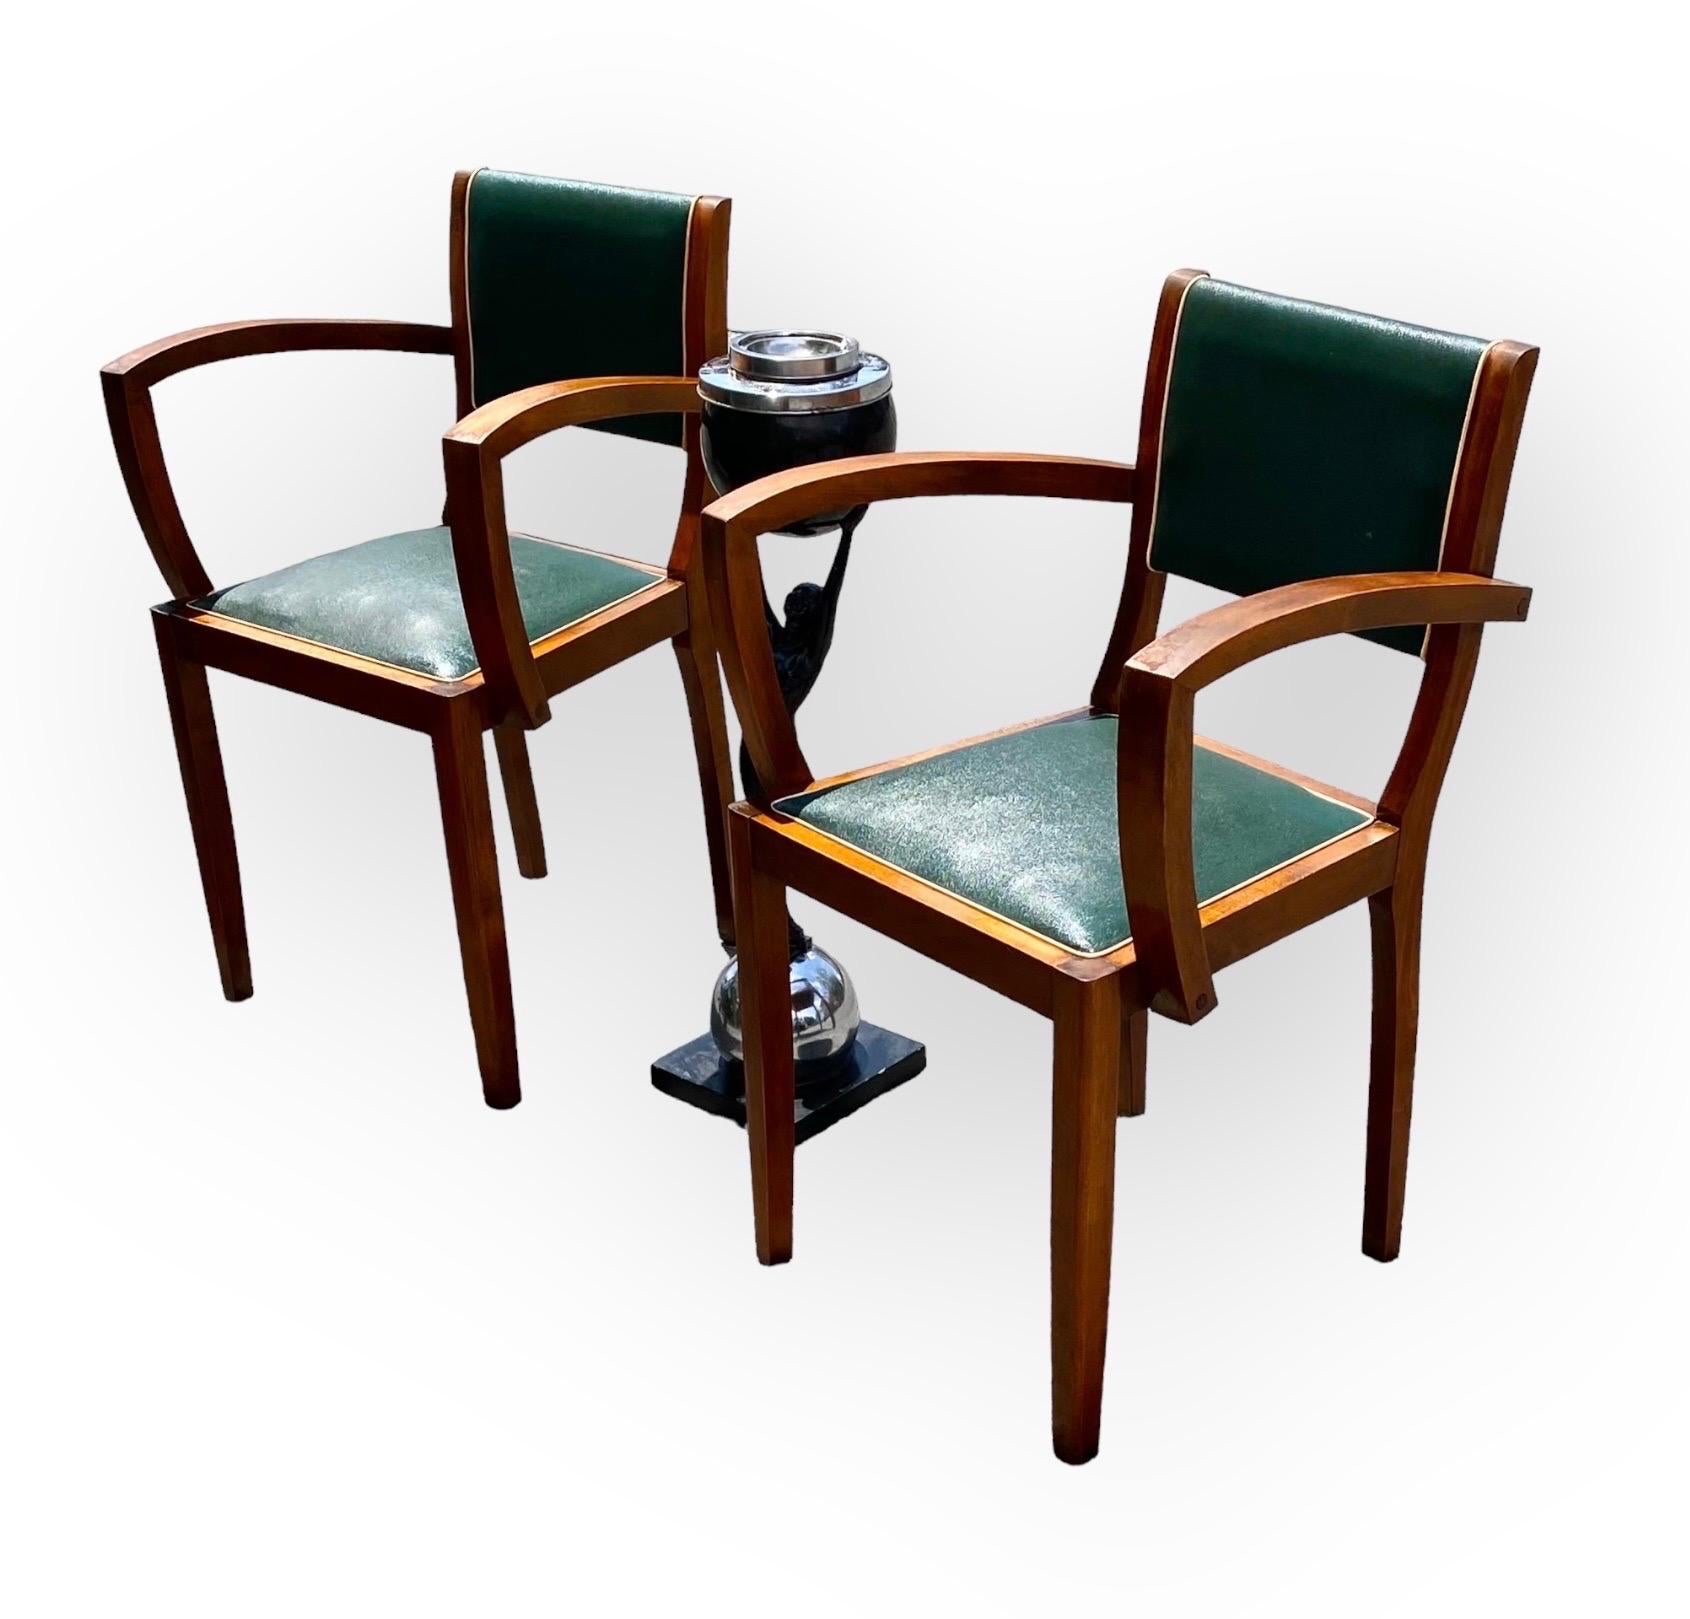 Imitation cuir Paire de chaises Bridge en faux cuir vert Art Déco français, vers 1930